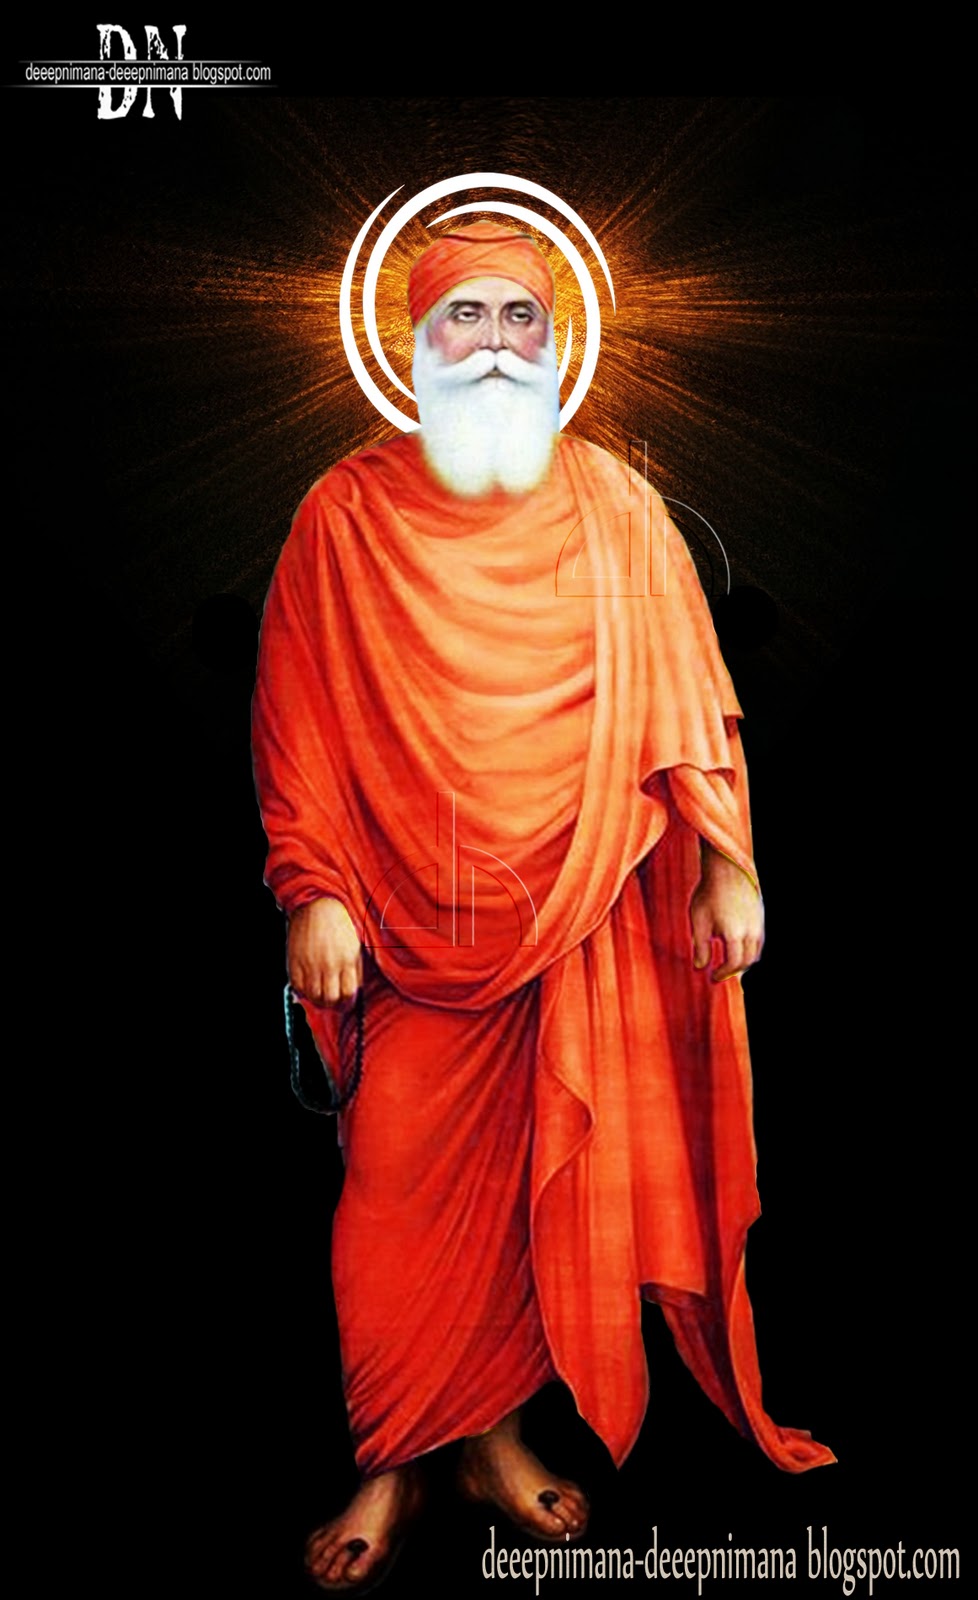 deeepnimana-deeepnimana blogspot.com: guru nanak dev ji